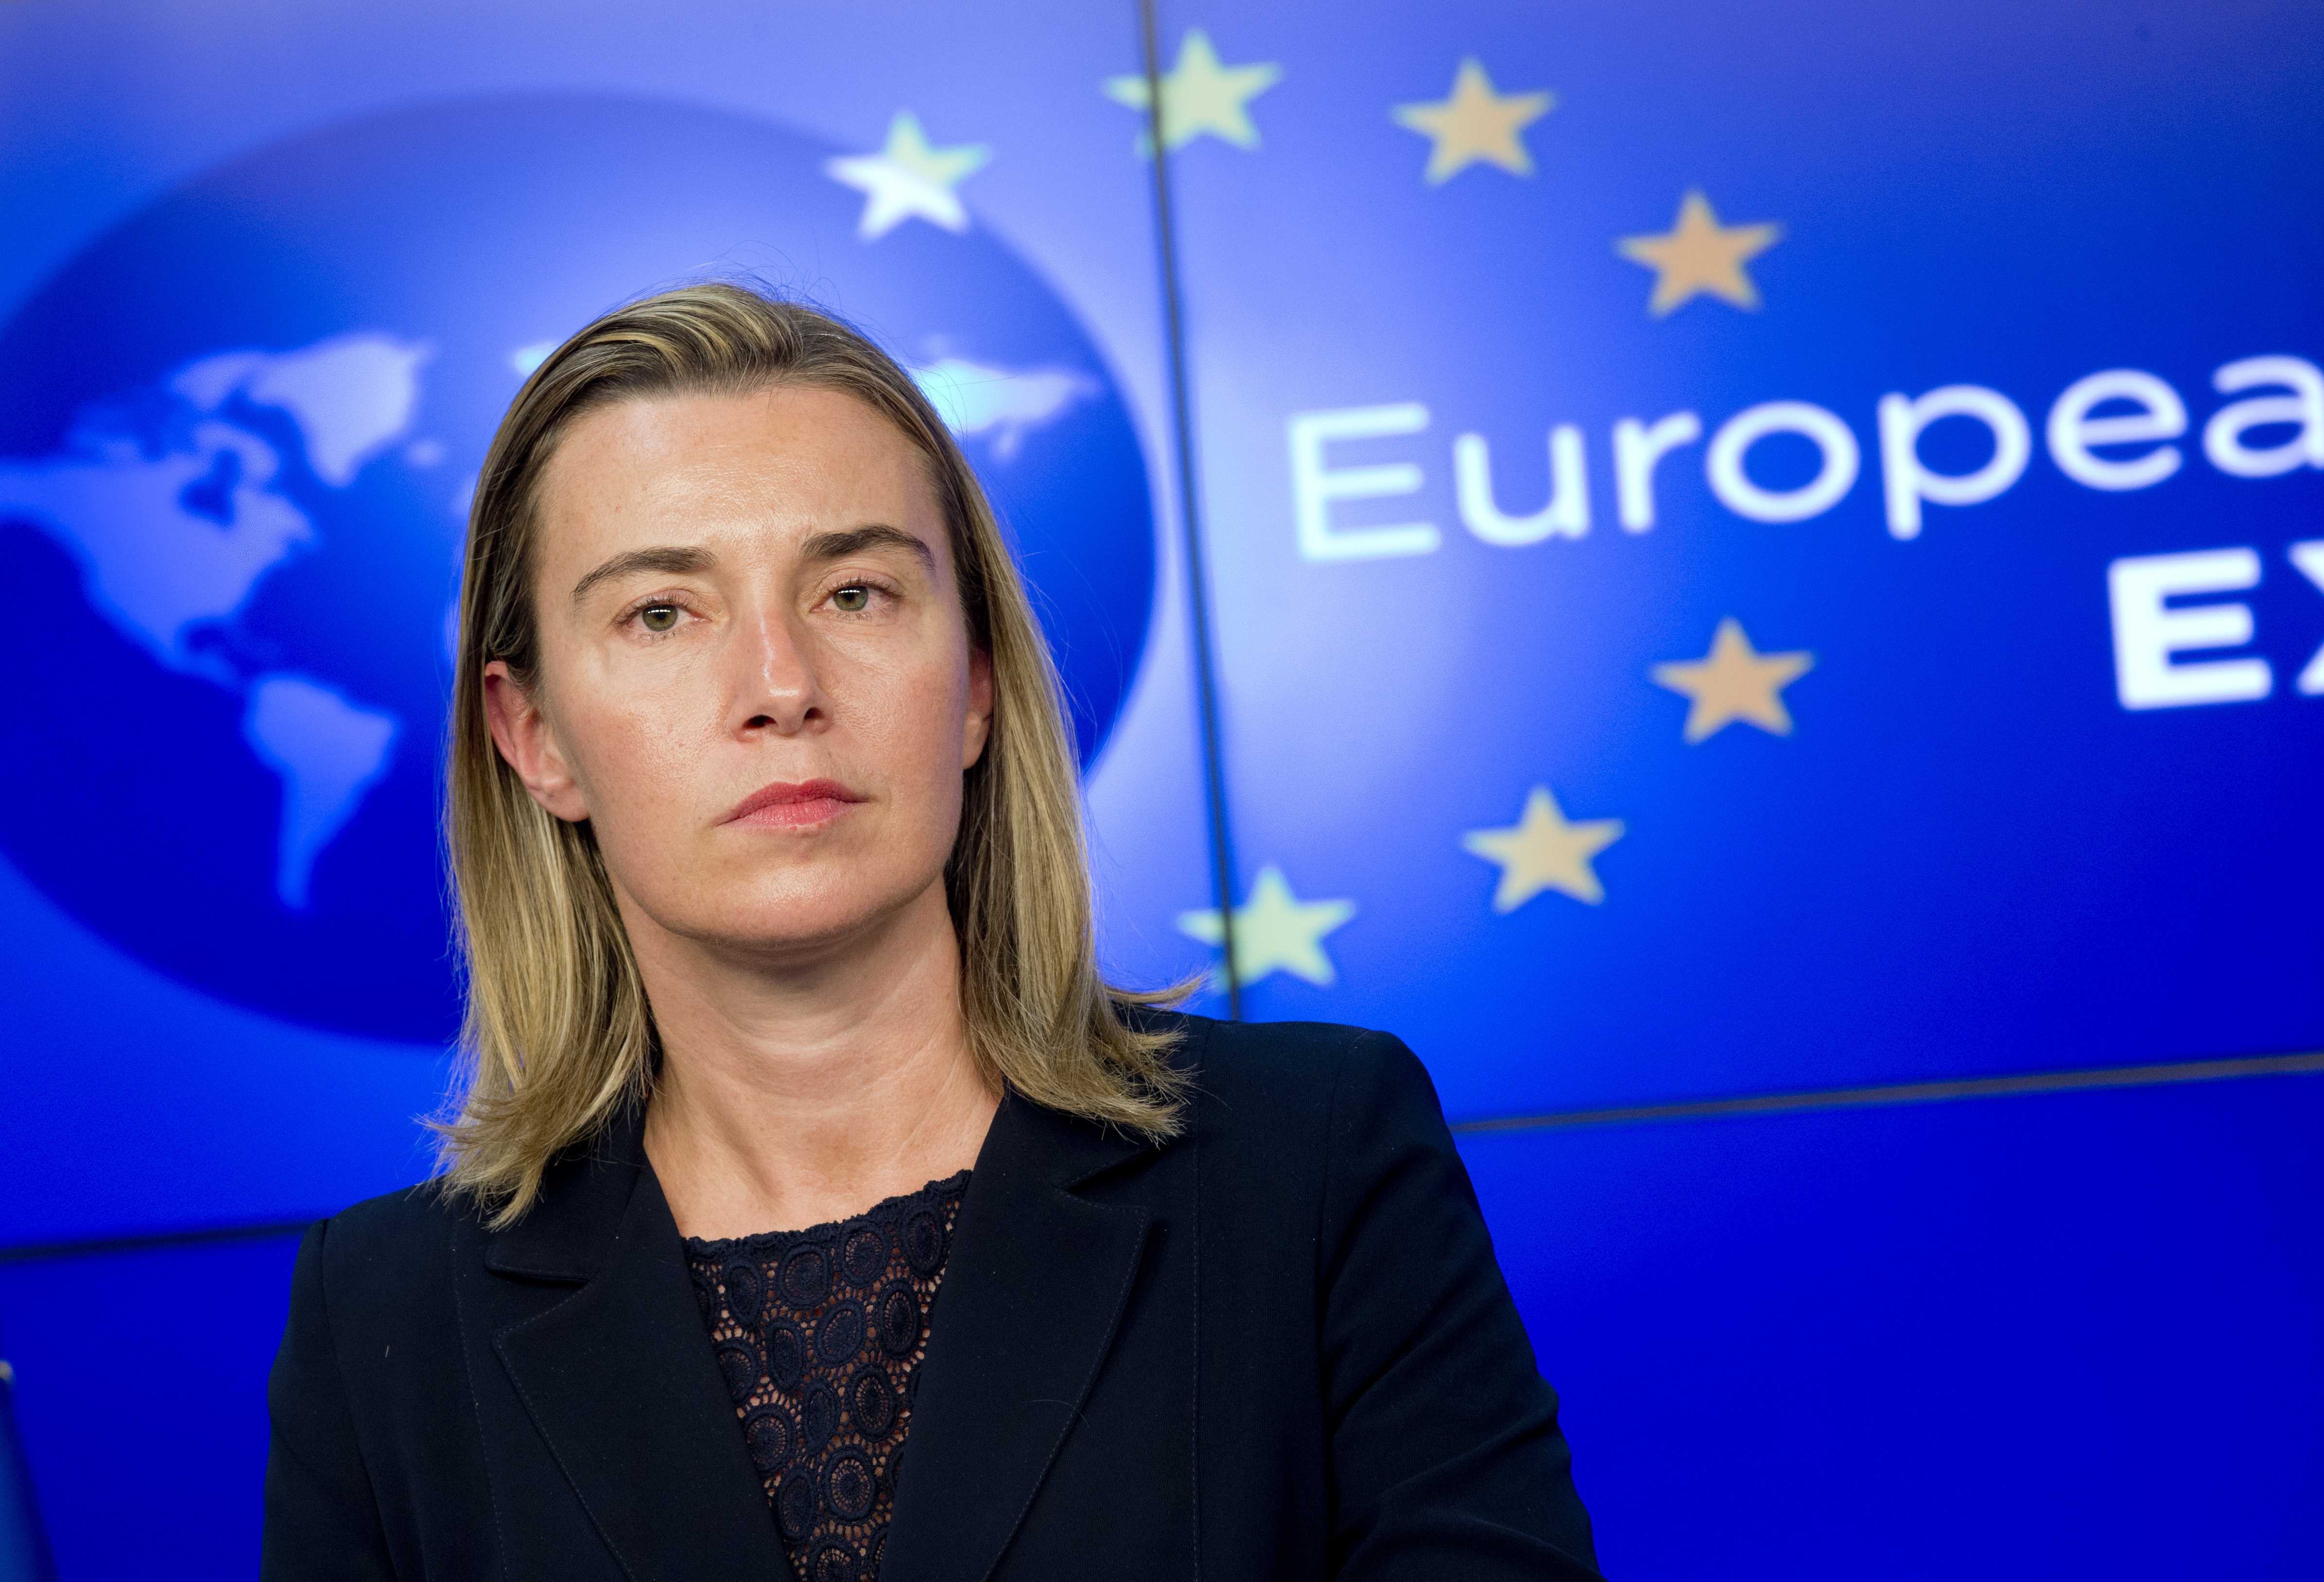 ЕС не признает незаконную аннексию Крыма и Севастополя – Могерини